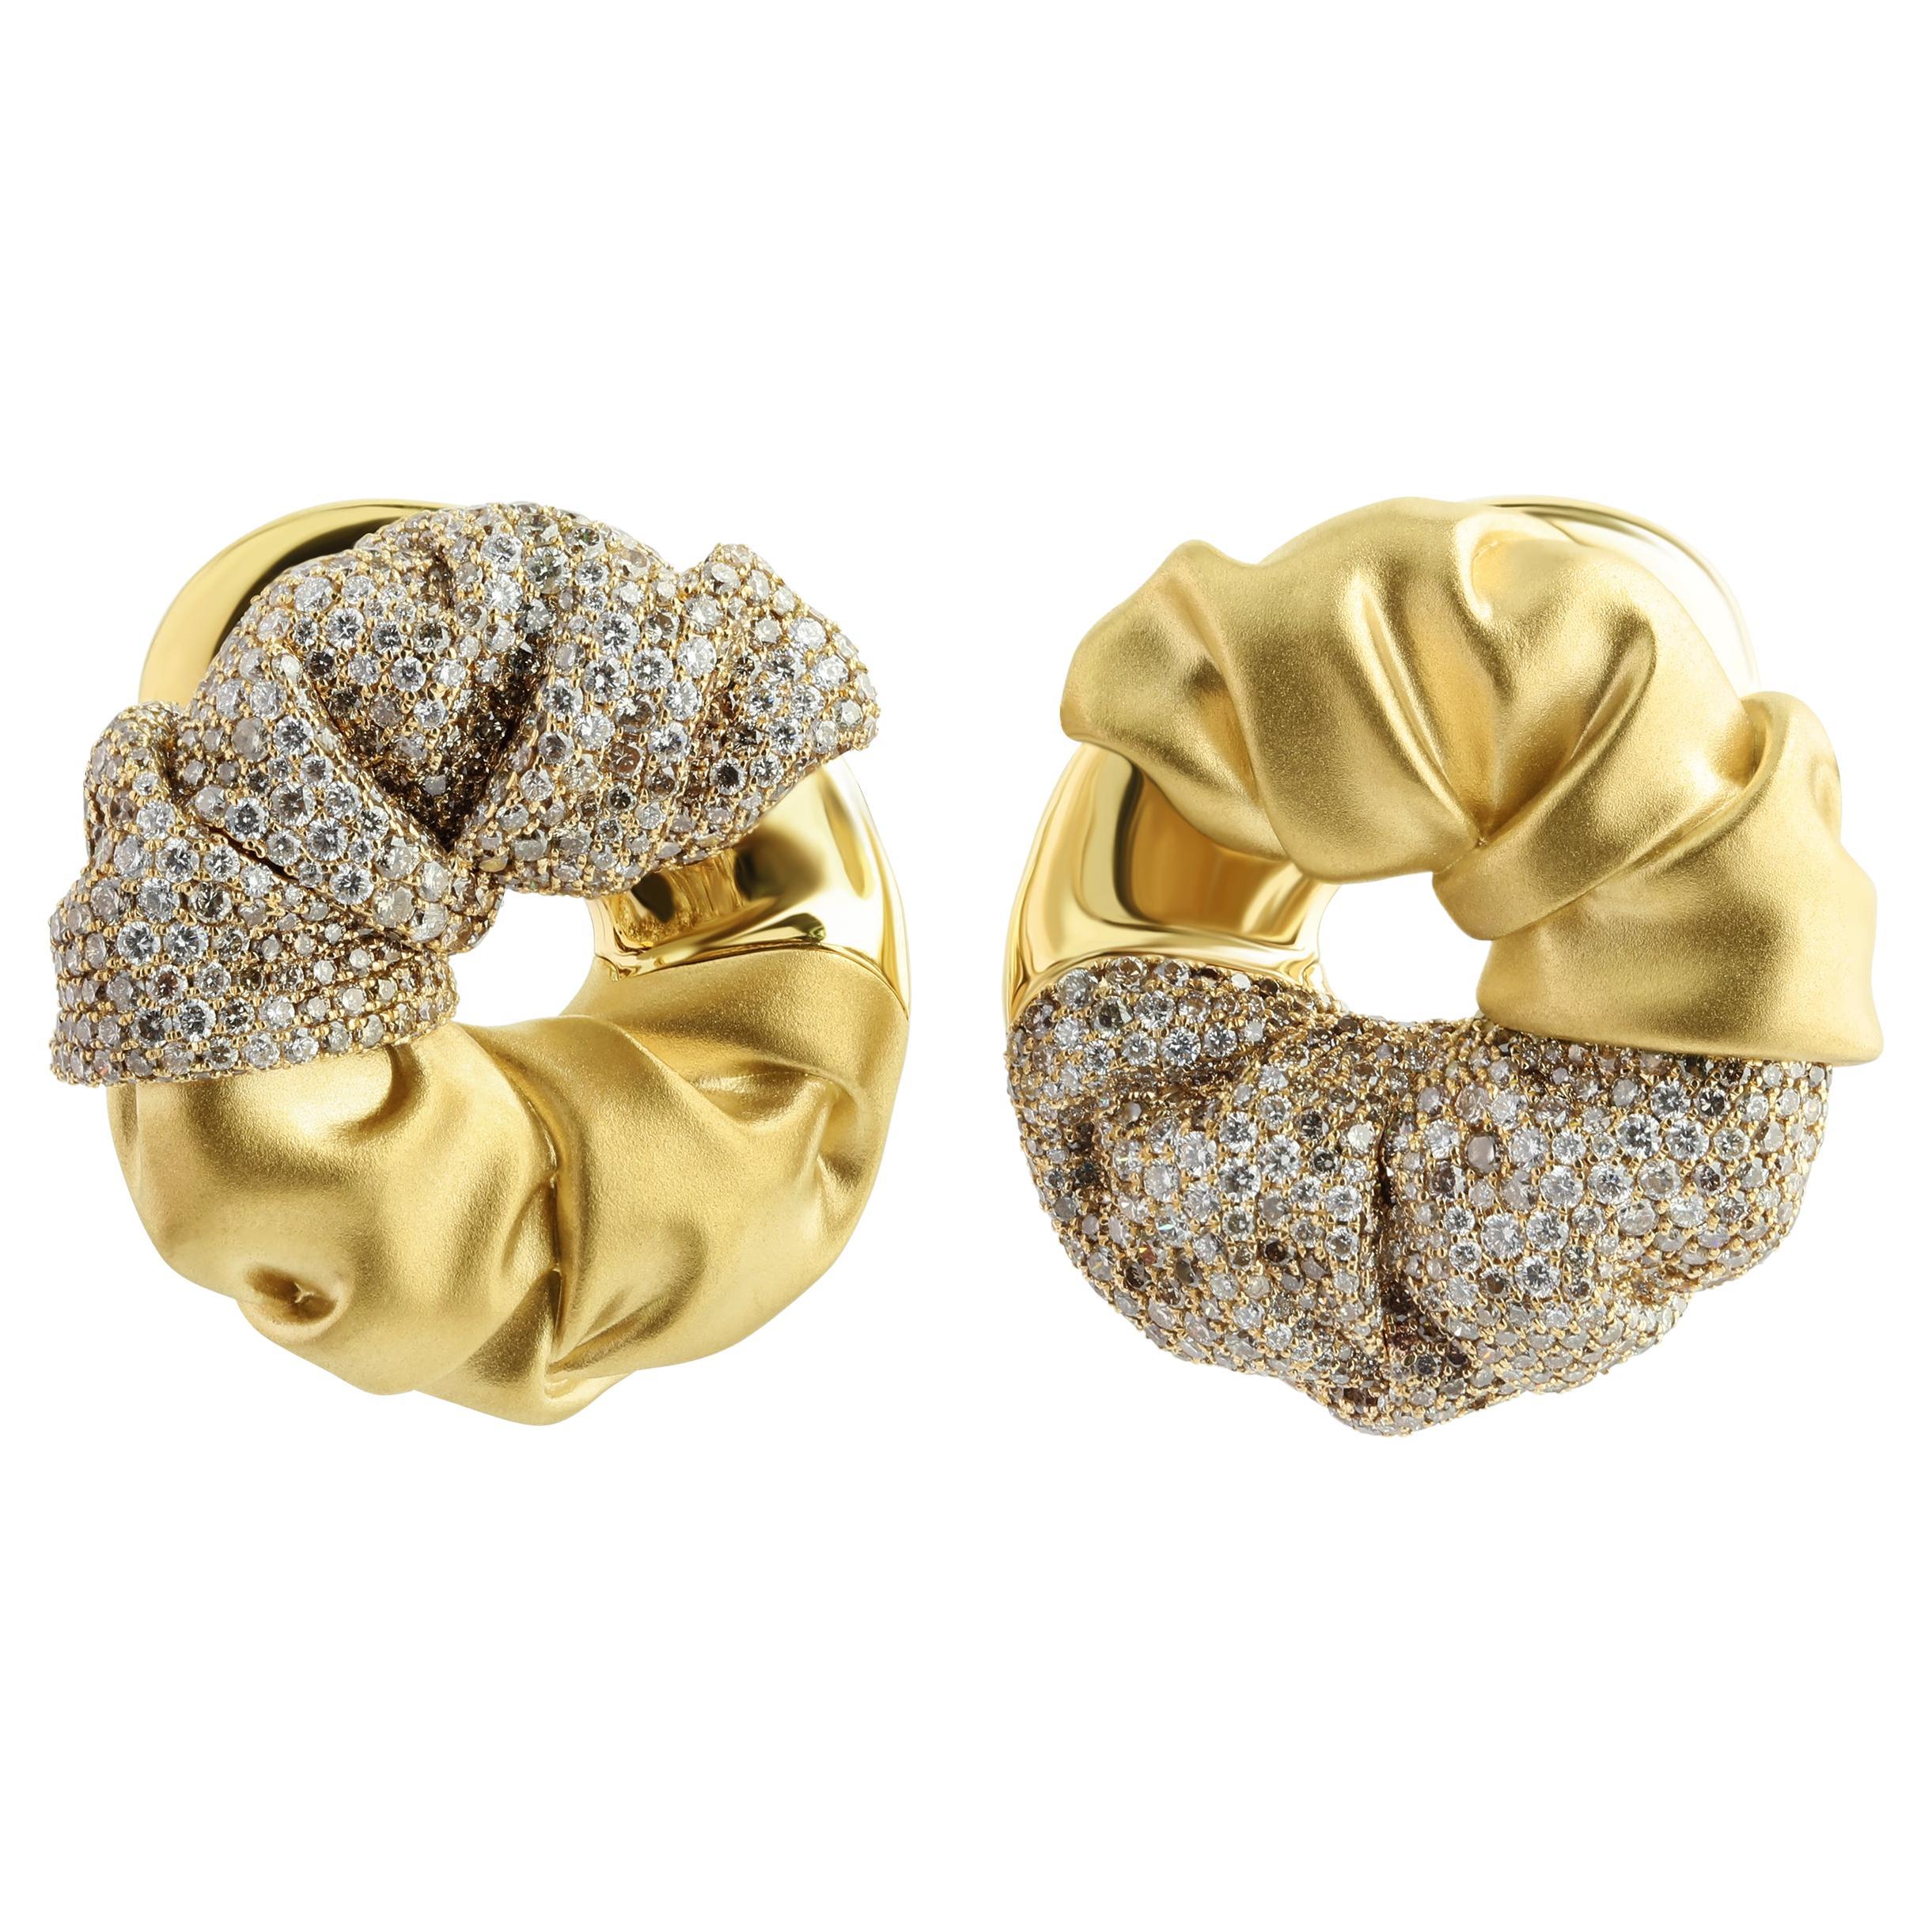 Boucles d'oreilles en or jaune 18 carats avec diamants blancs et bruns